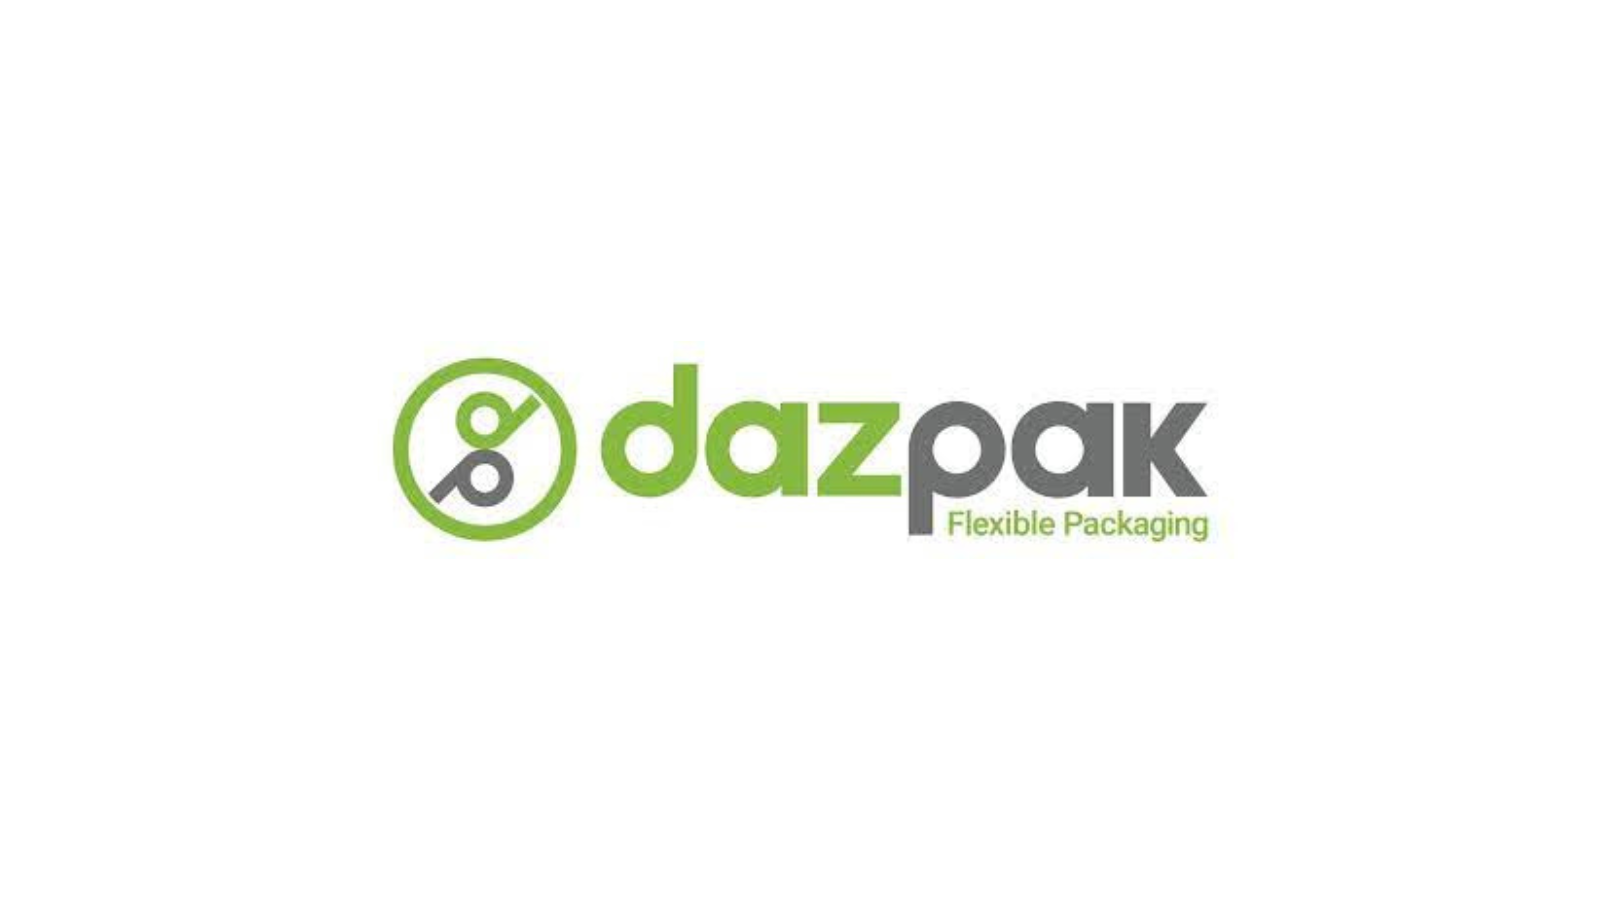 DazPak Flexible Packaging